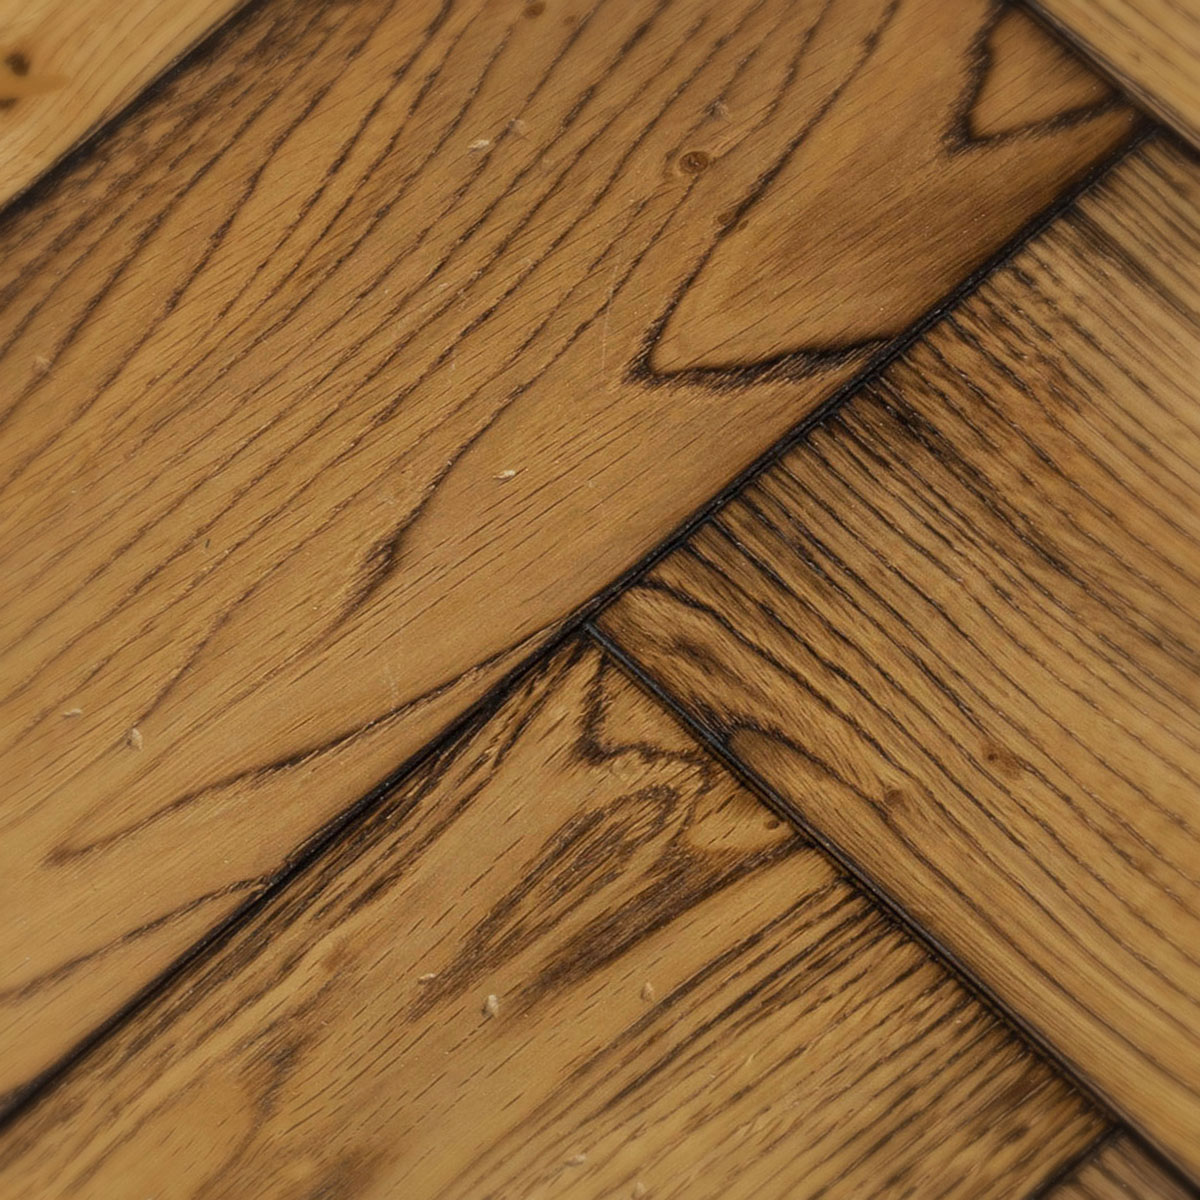 Lowfield Lane Herringbone - Brushed, Worn Engineered Oak Floor